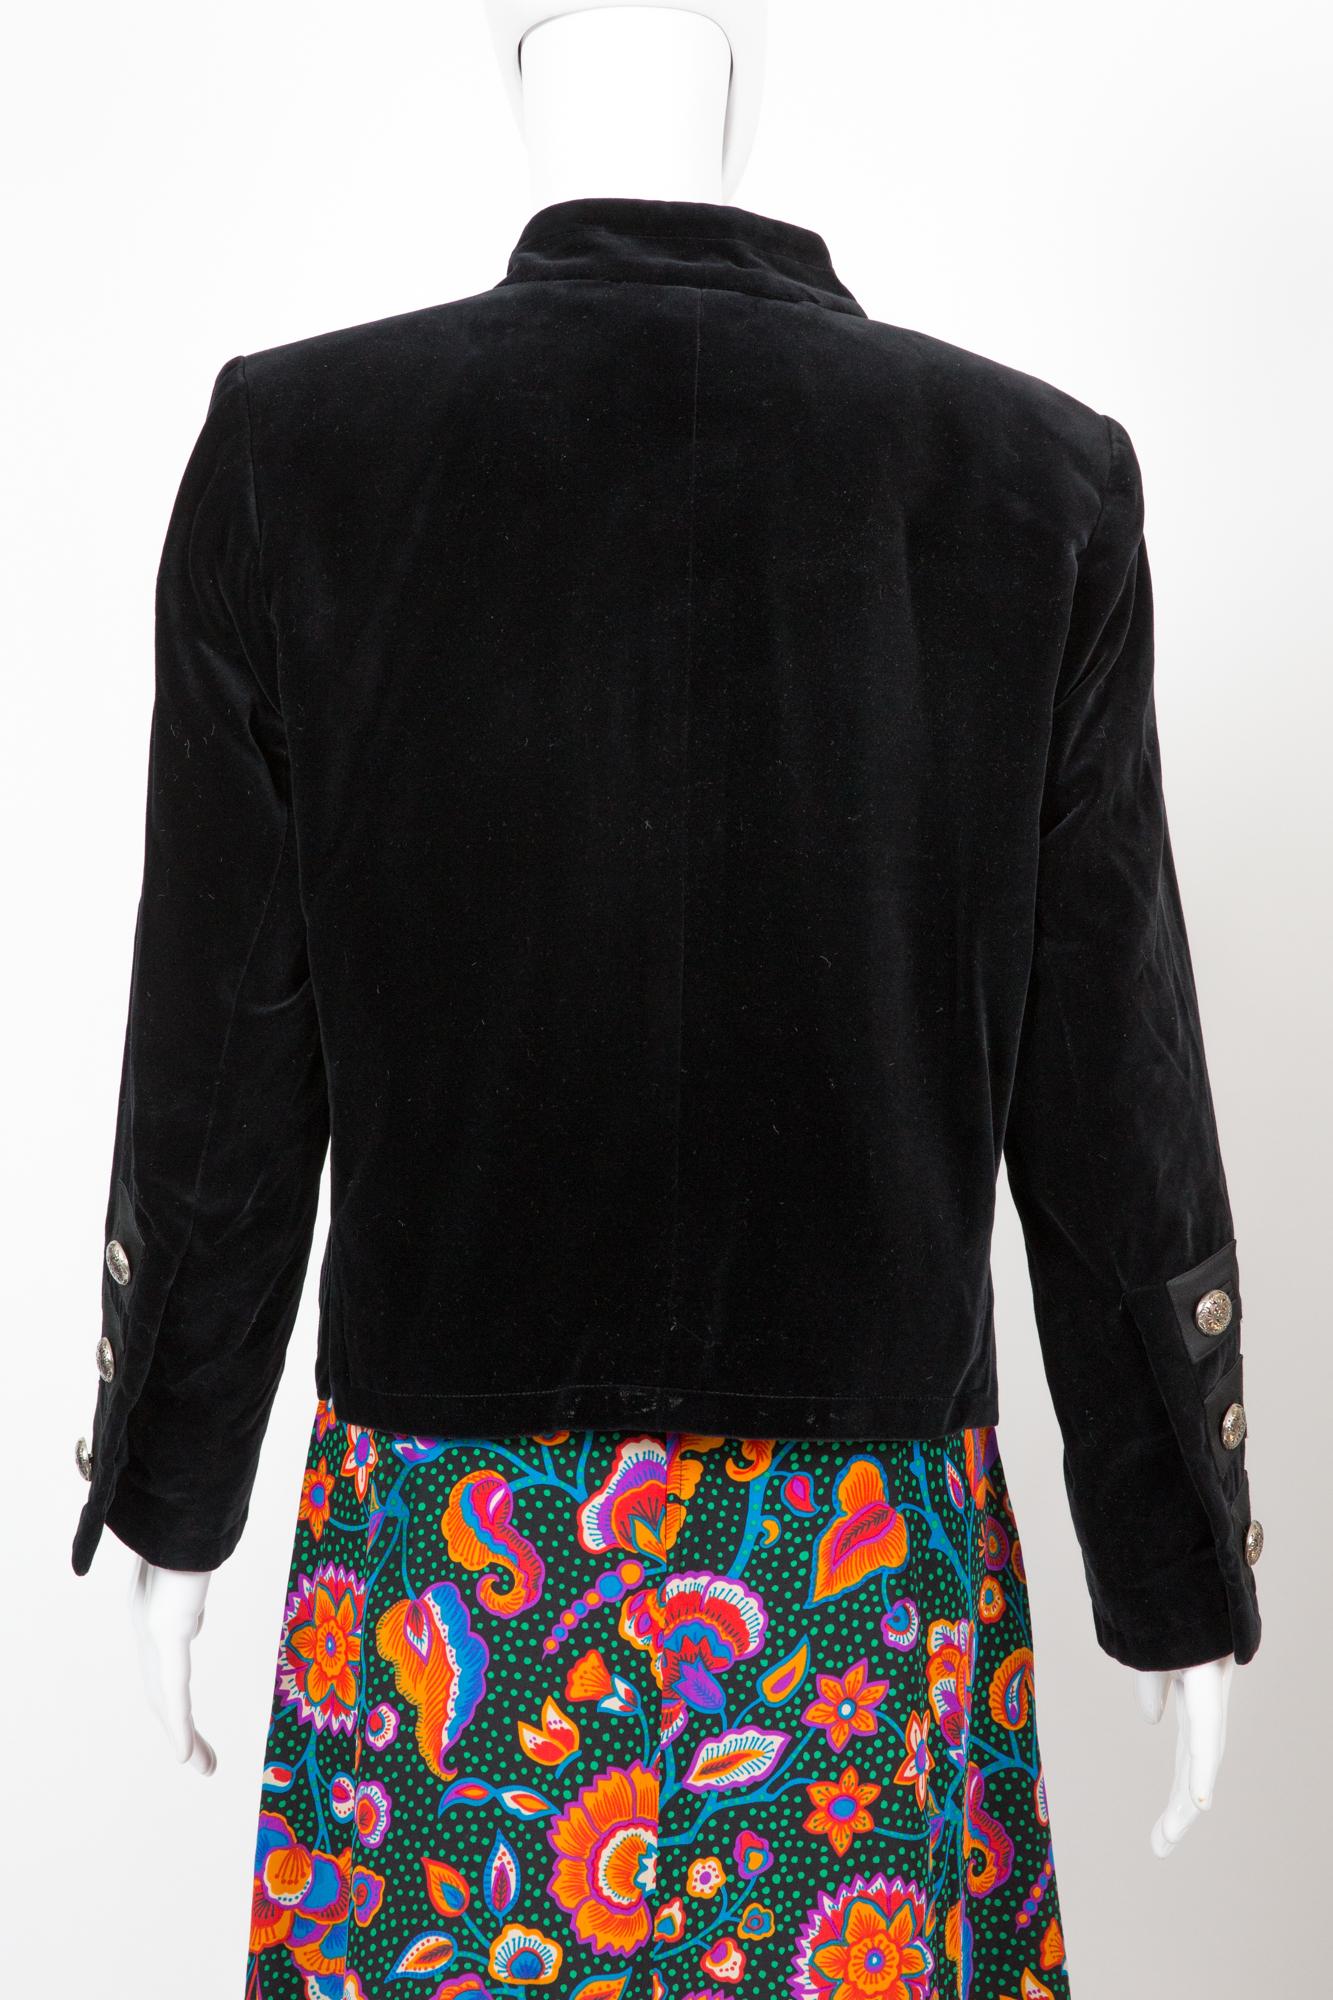 Women's Iconic 1991s Yves Saint Laurent YSL Black Velvet Evening Jacket